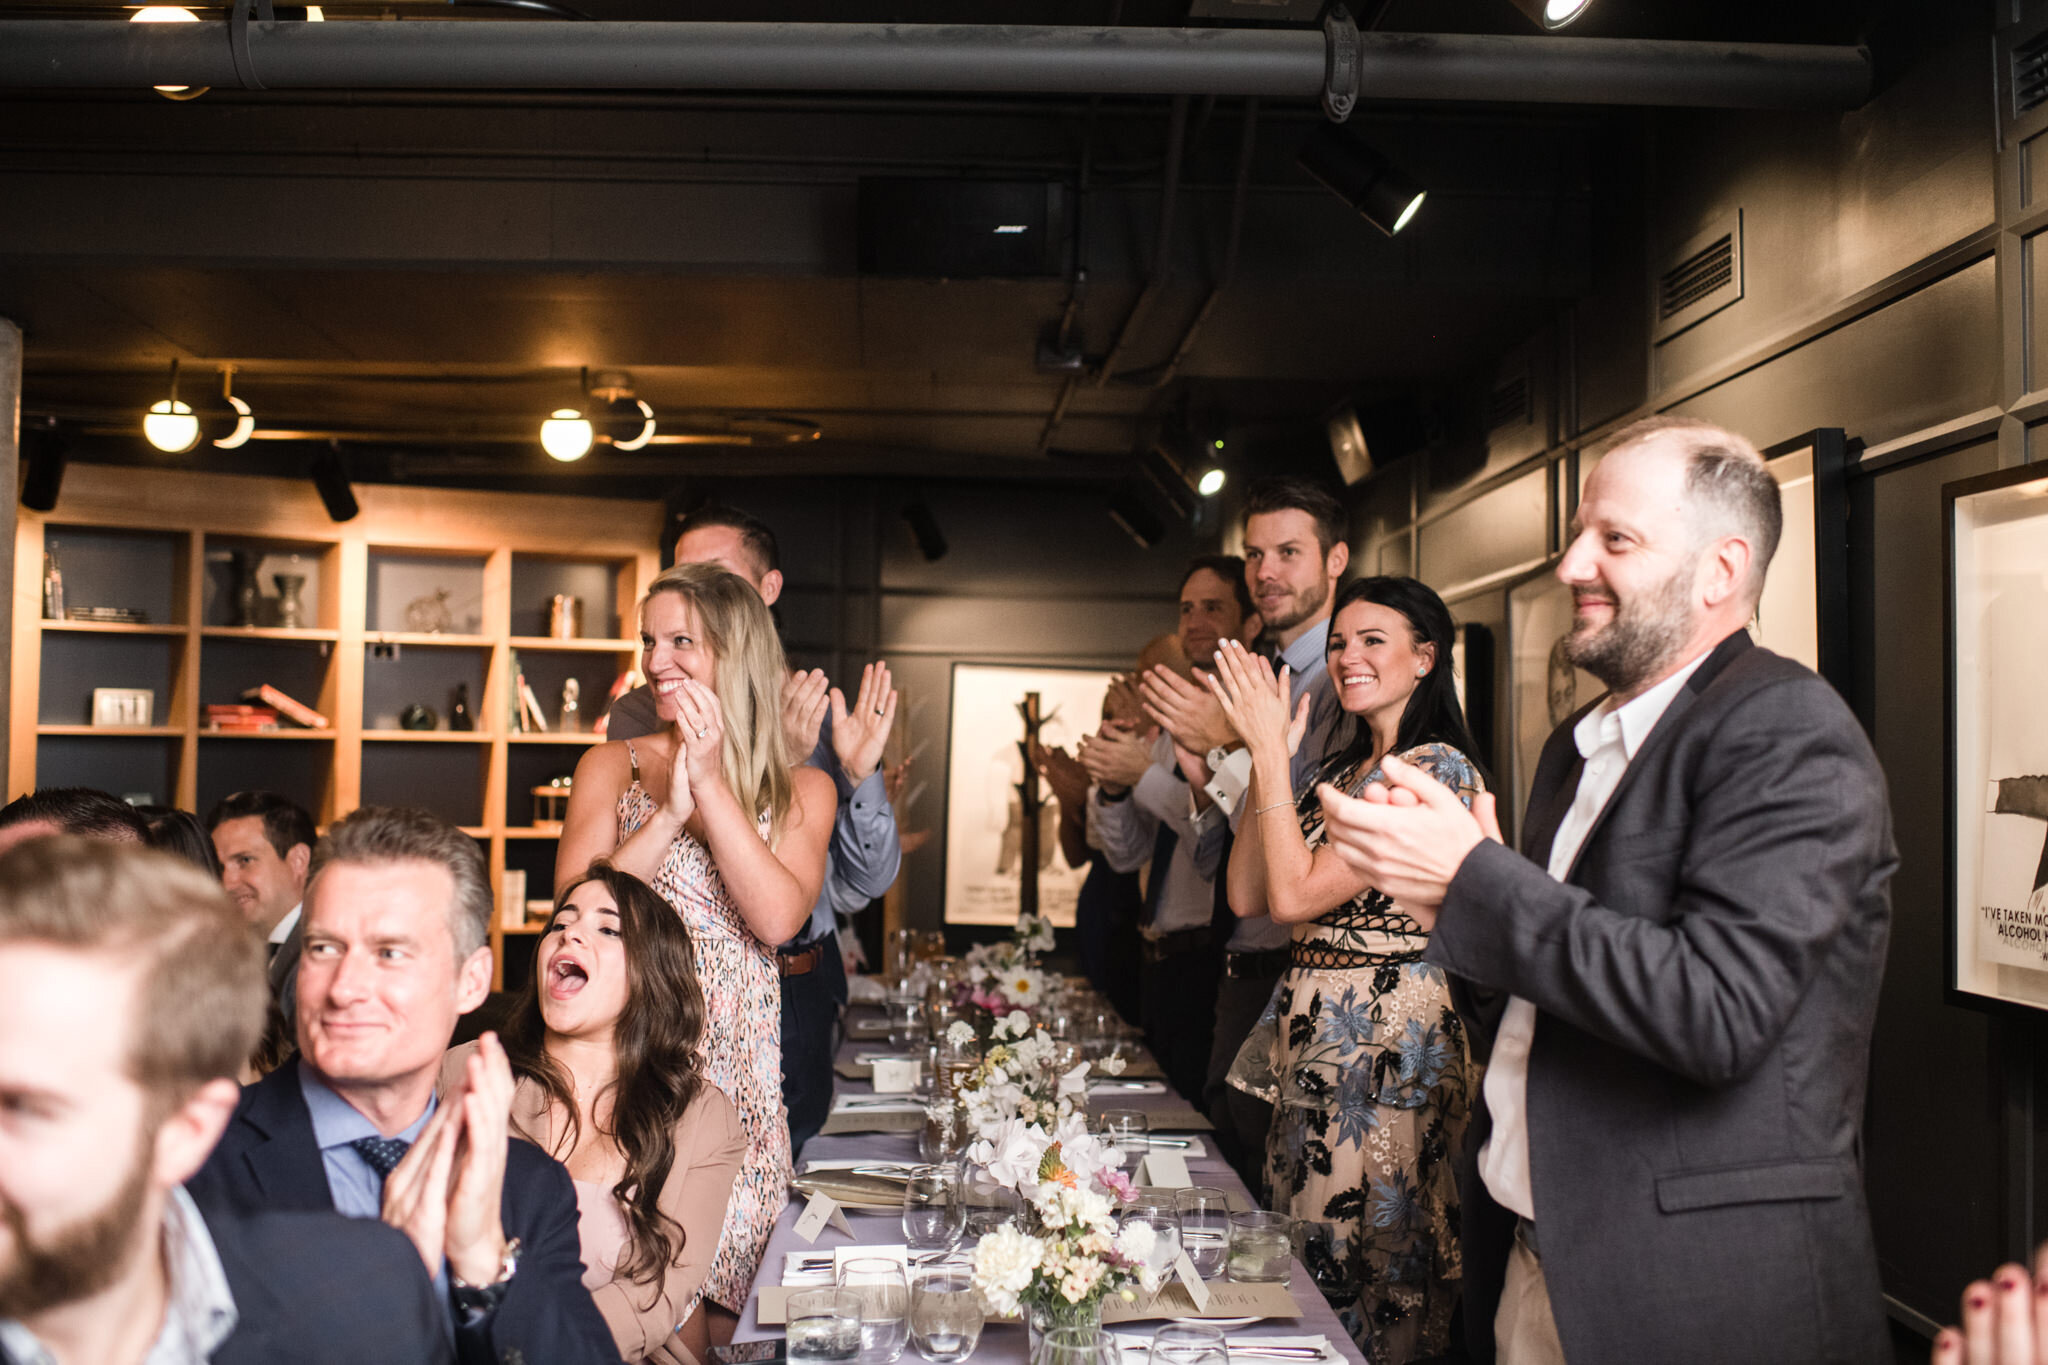 856-guest-speech-reaction-candids-brewery-maverick-toronto-restaurant-wedding-photos.jpg